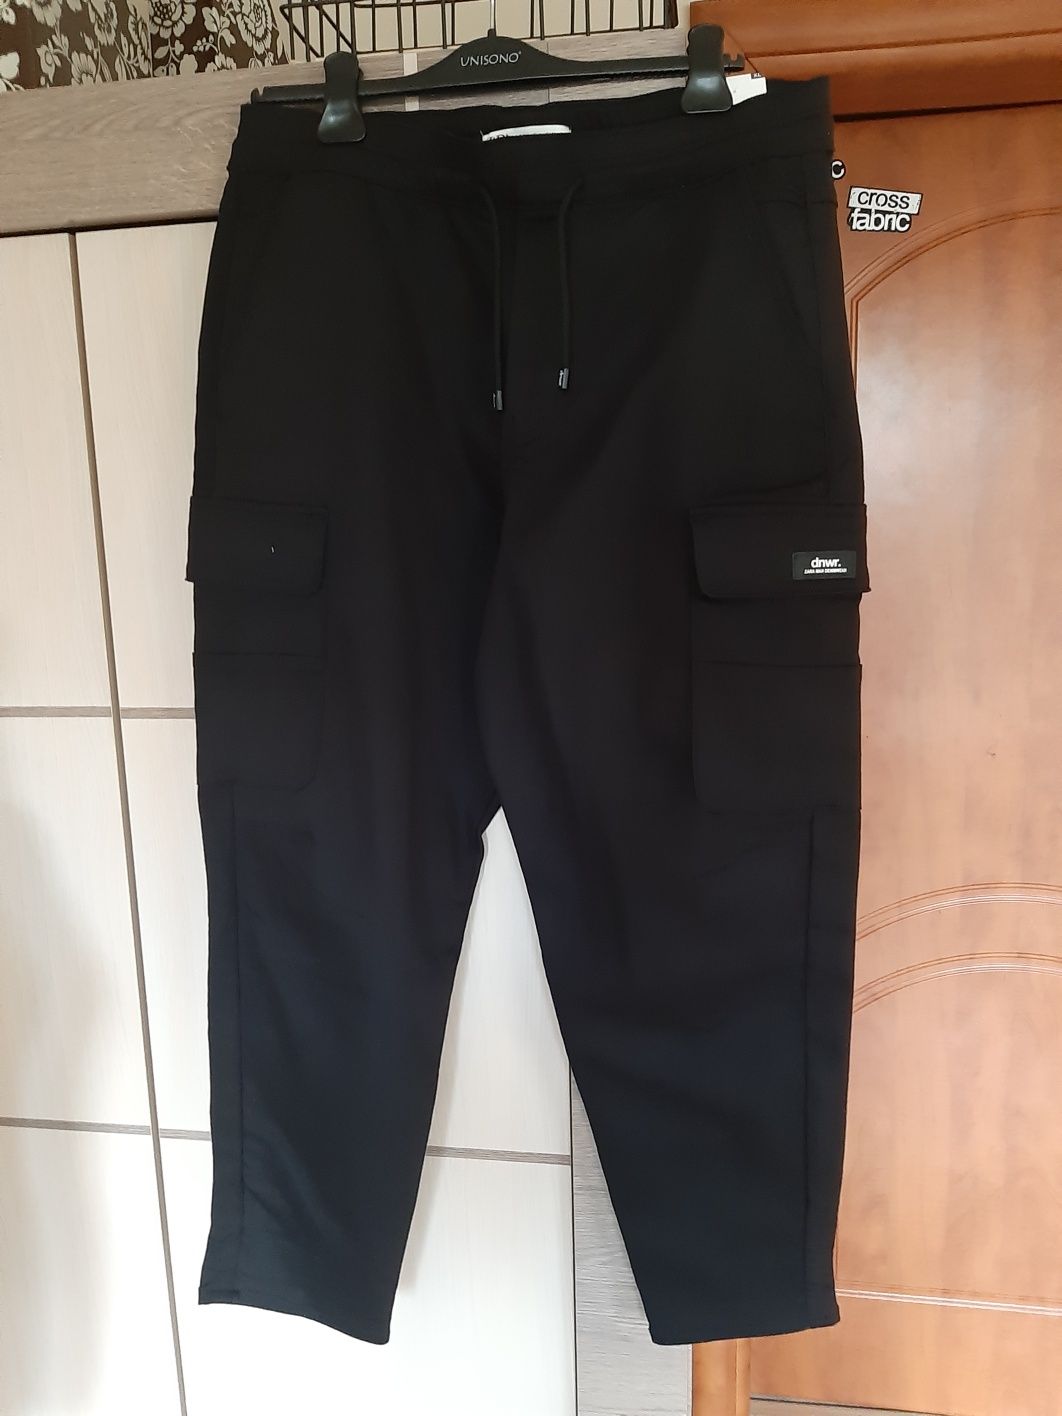 Spodnie Zara XL joggery tkanina czarne nowe wojskowe man